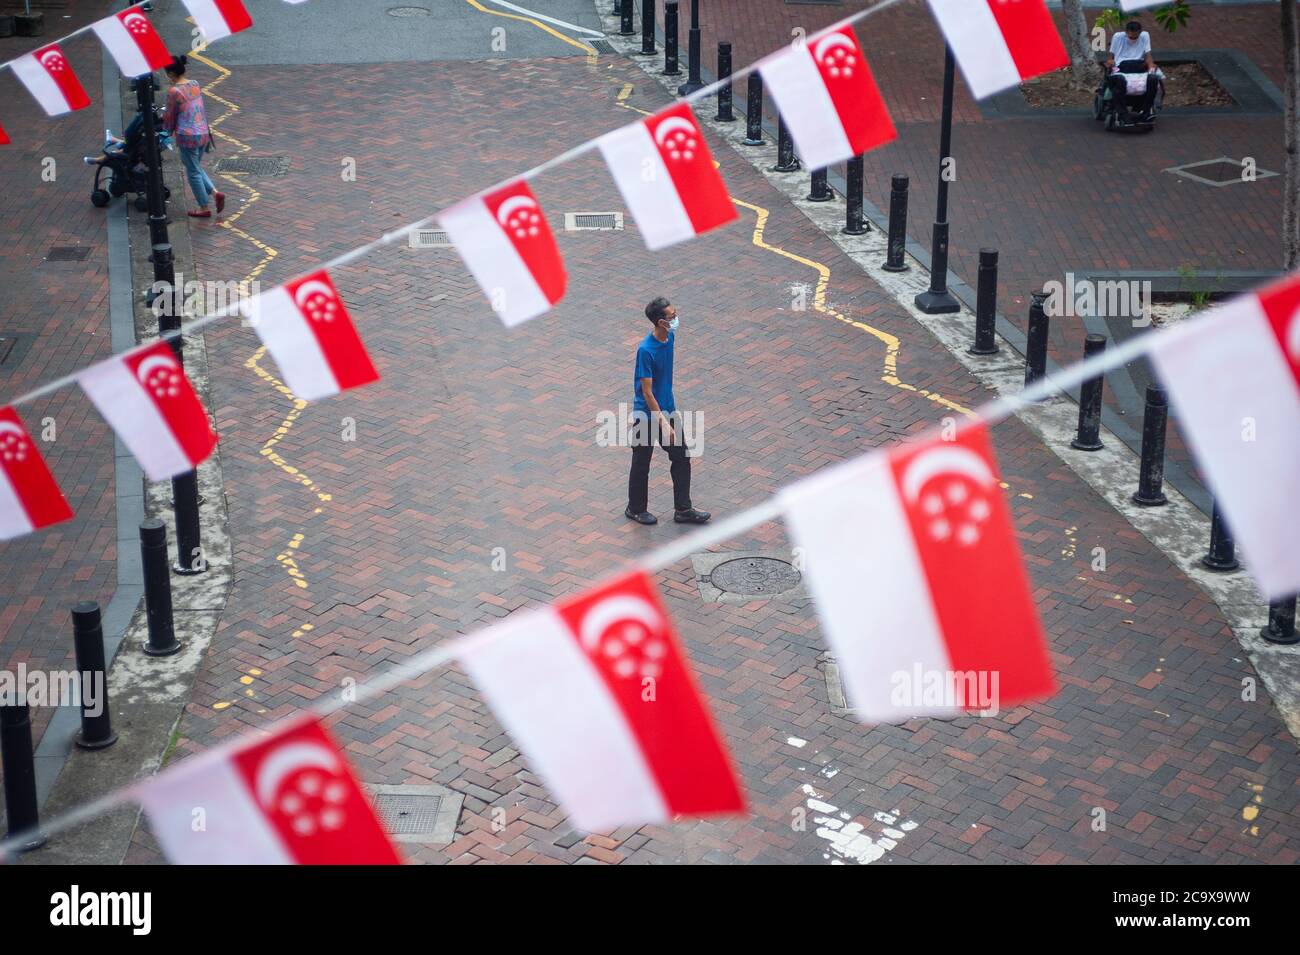 16.07.2020, Singapur, Republik Singapur, Asien - kleine Flaggen in den Nationalfarben des Stadtstaates, die als Wimpelbanner über der Straße schweben. Stockfoto